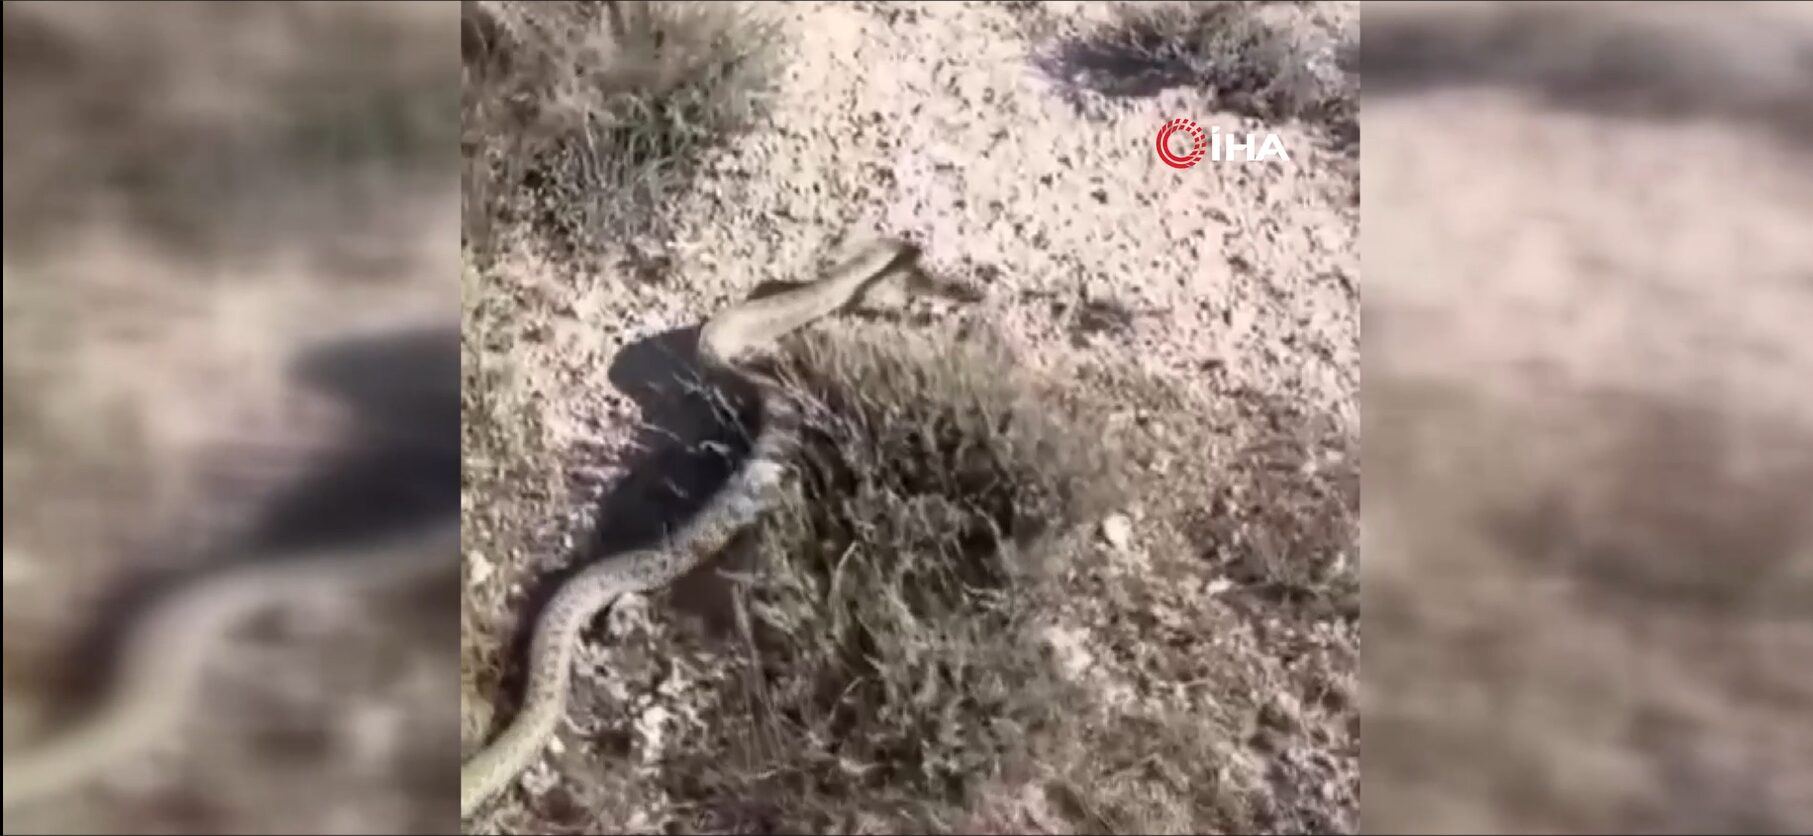 Siverek’te nesli tükenen en zehirli yılanlardan olan engerek yılanı görüntülendi